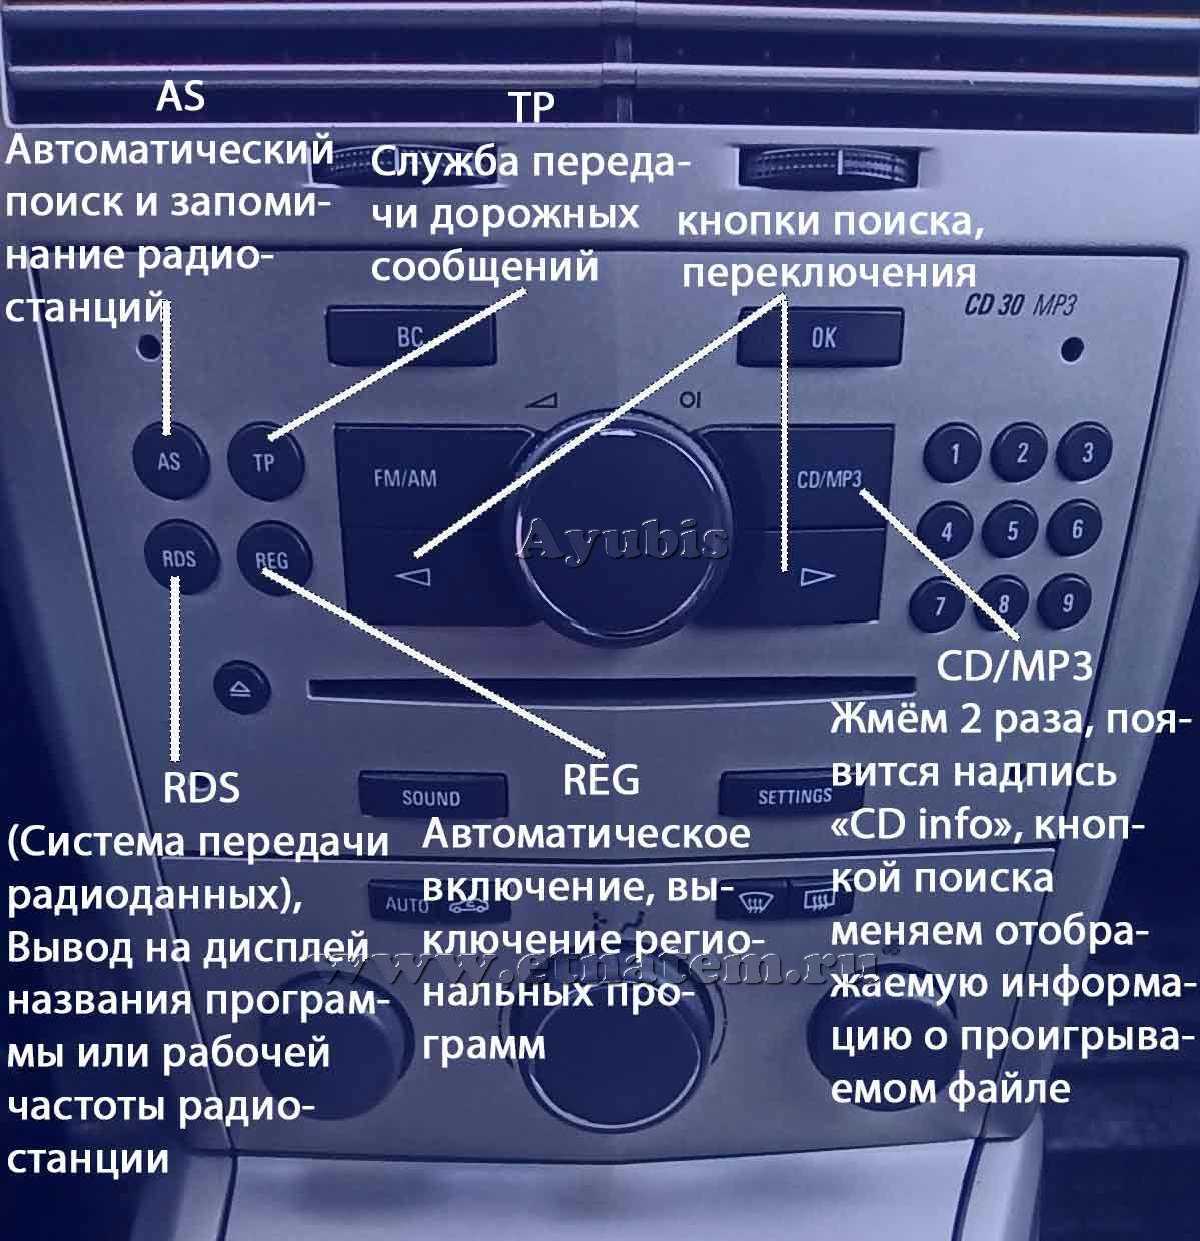 Плохо ловит радио в машине — поиск причины и улучшение приёма